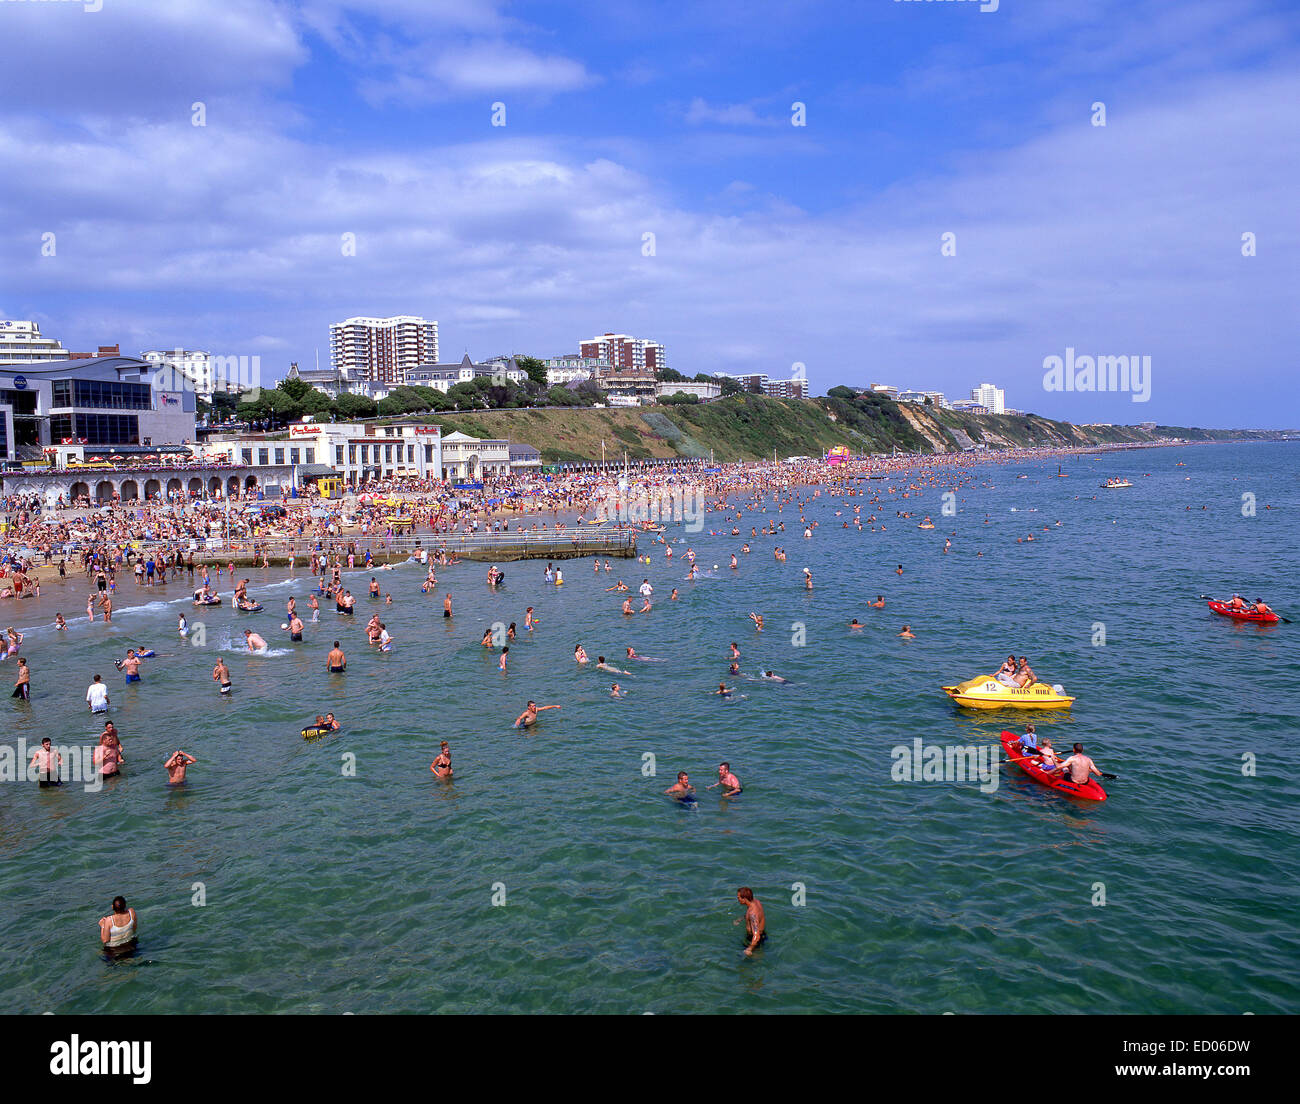 Playa llena de gente en verano, Bournemouth, Dorset, Inglaterra, Reino Unido Foto de stock